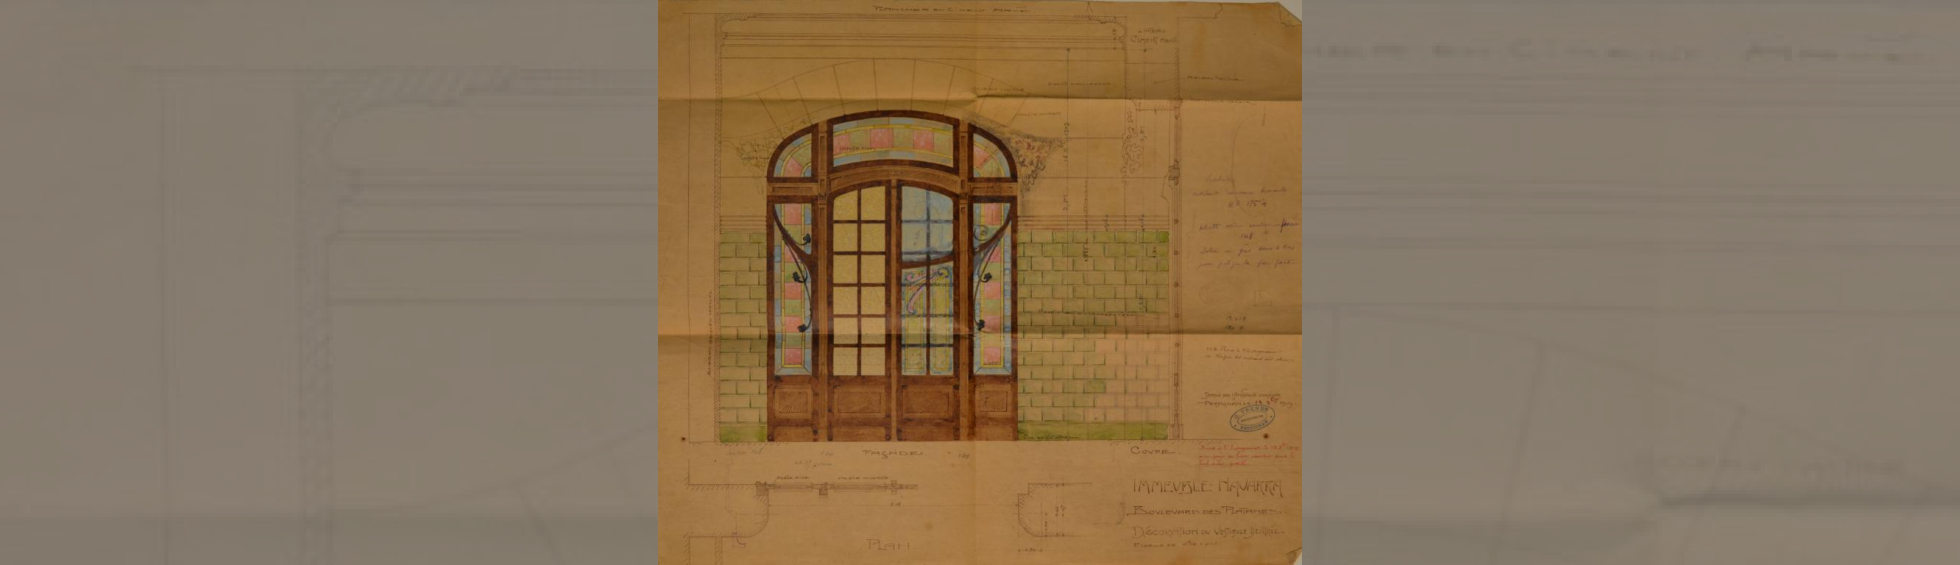 Croquis d'une porte bois à petit vitraux associée à des côtés Art nouveau avec décor de spires. 